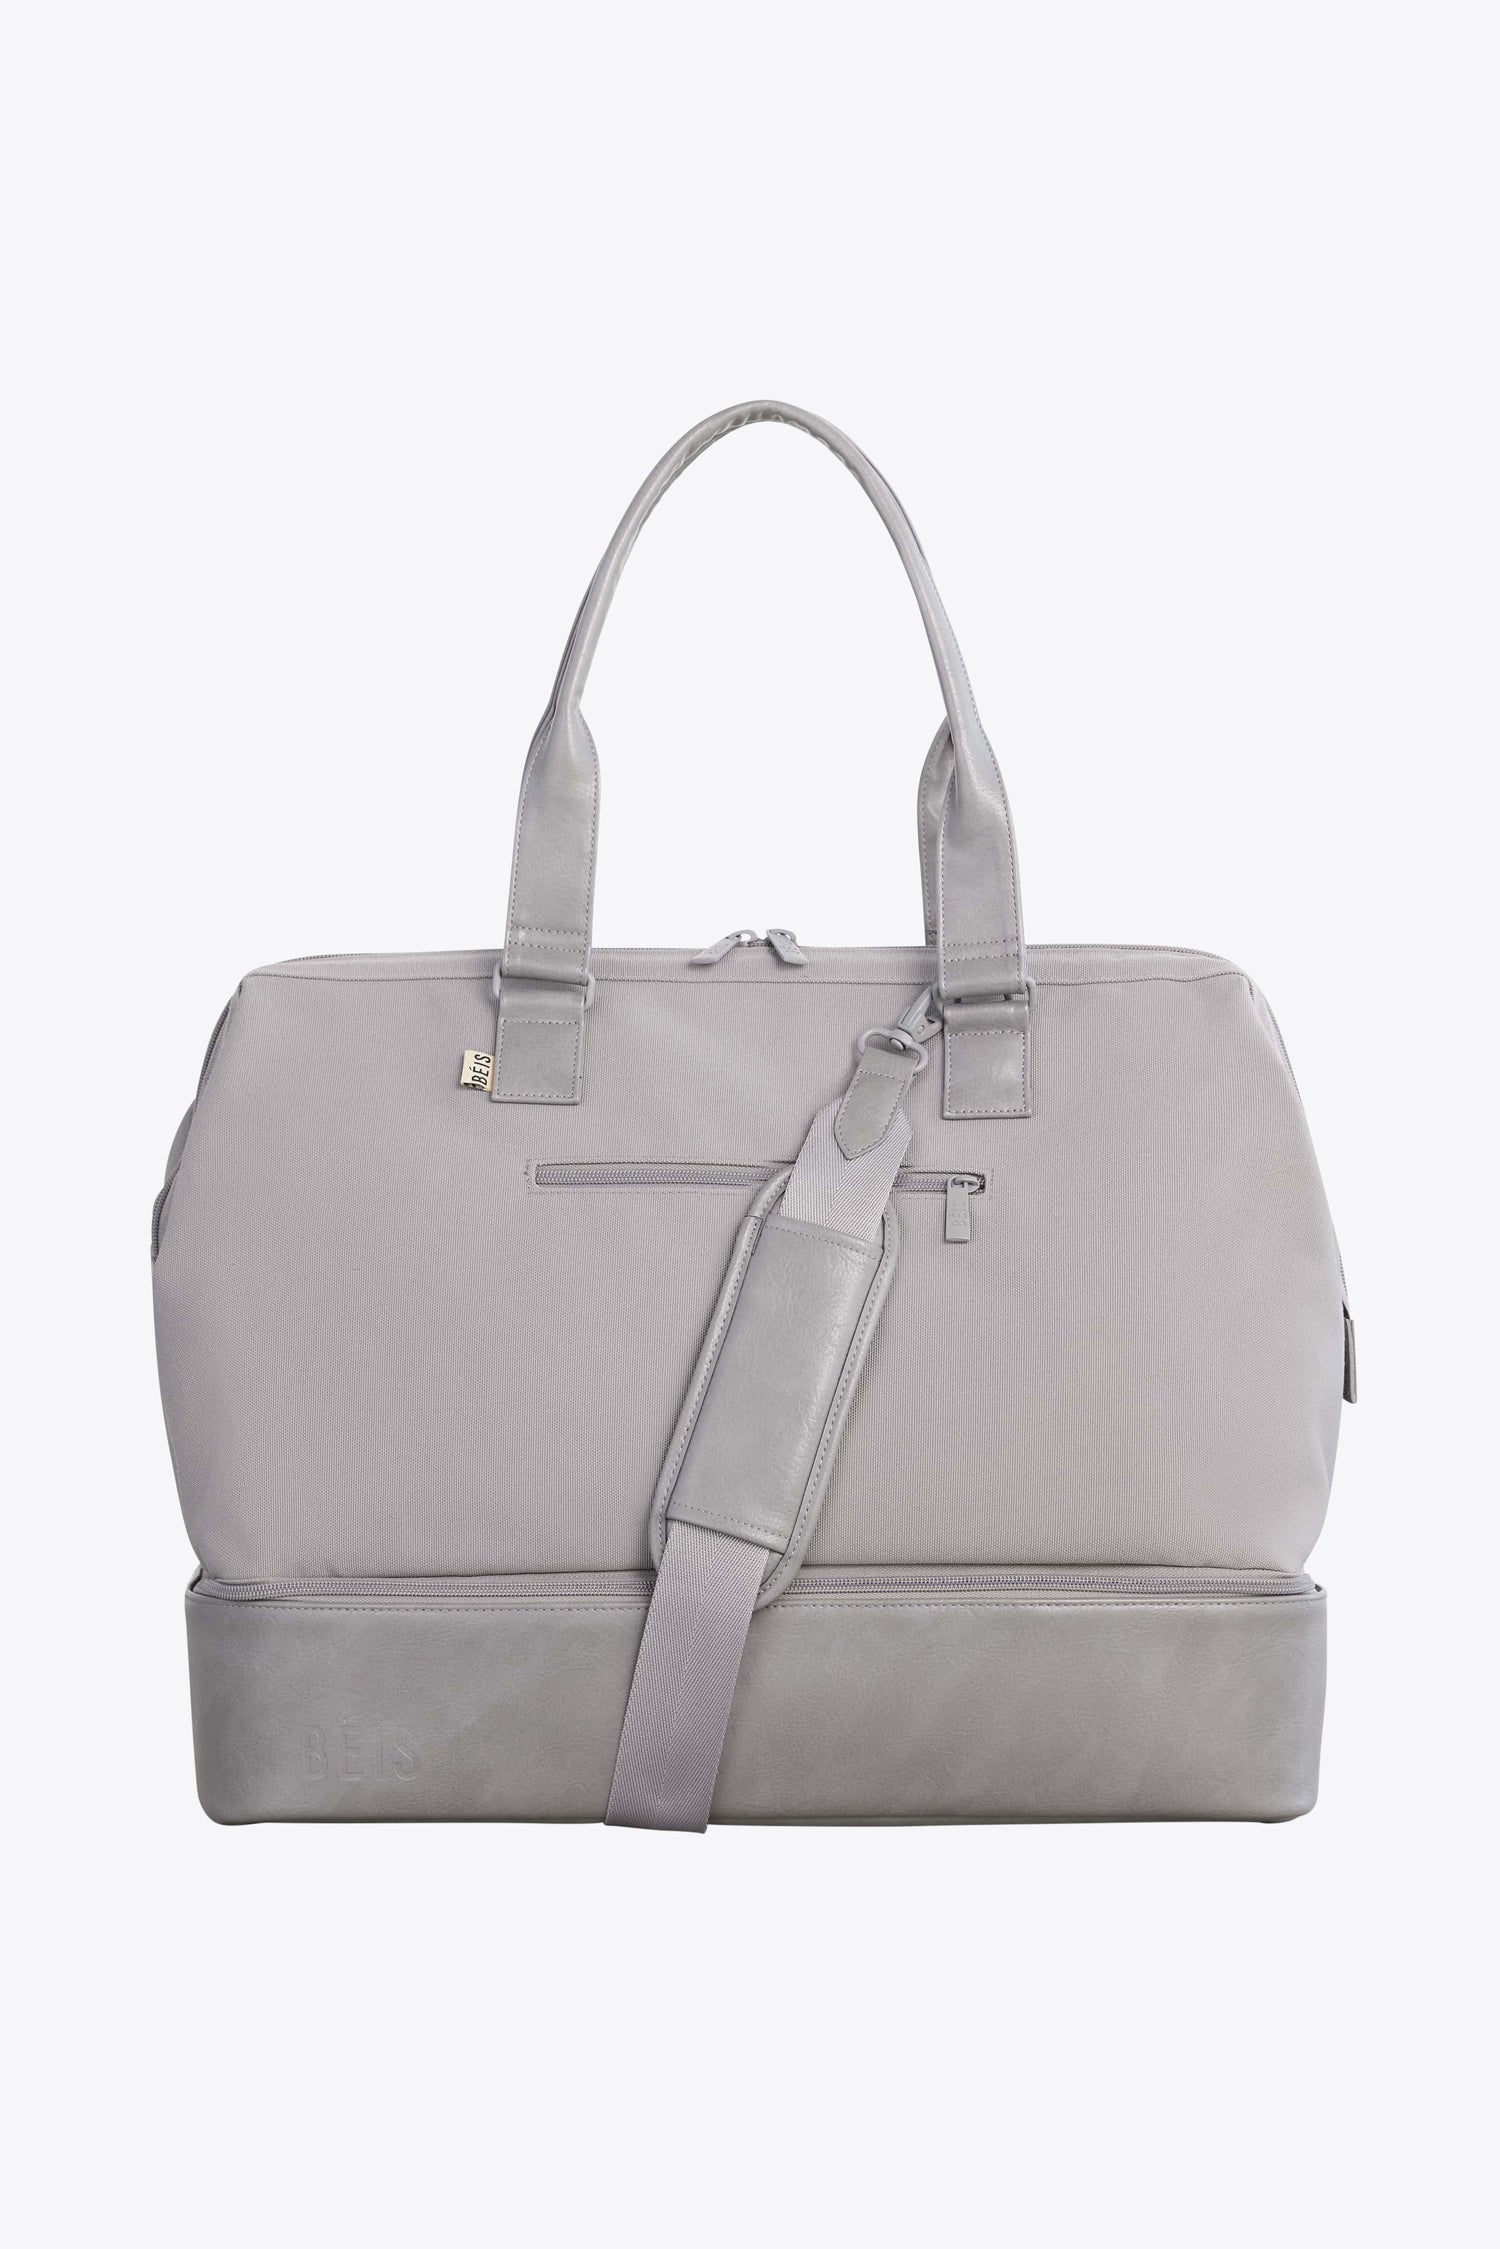 Grey Travel Bags, Work Totes & Weekenders